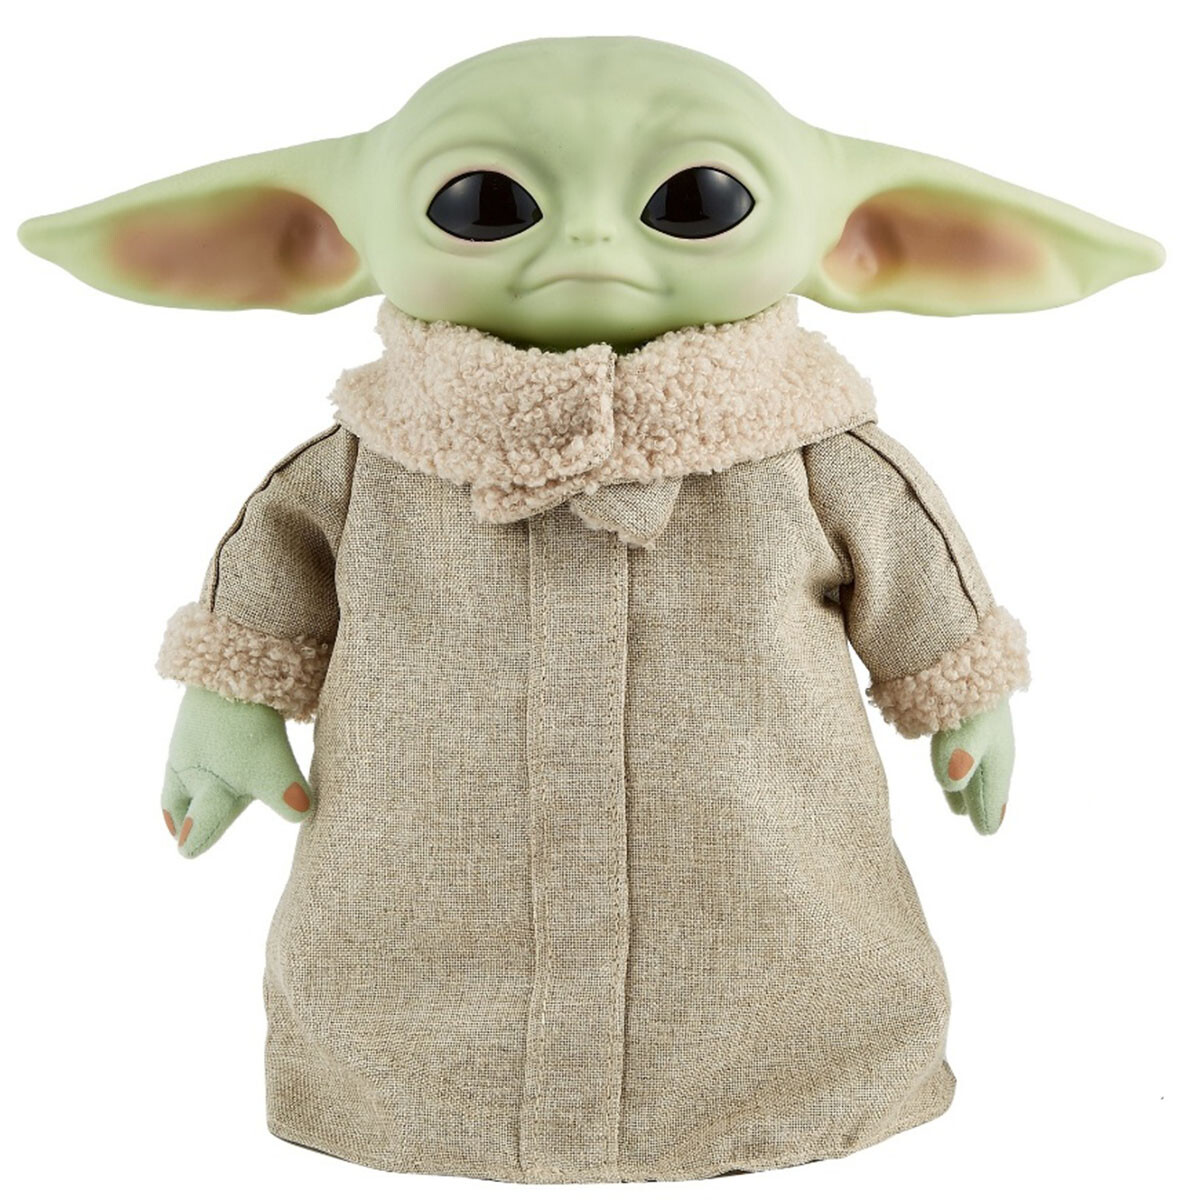 Star Wars Baby Yoda Grogu A Control Remoto C/Sonido 